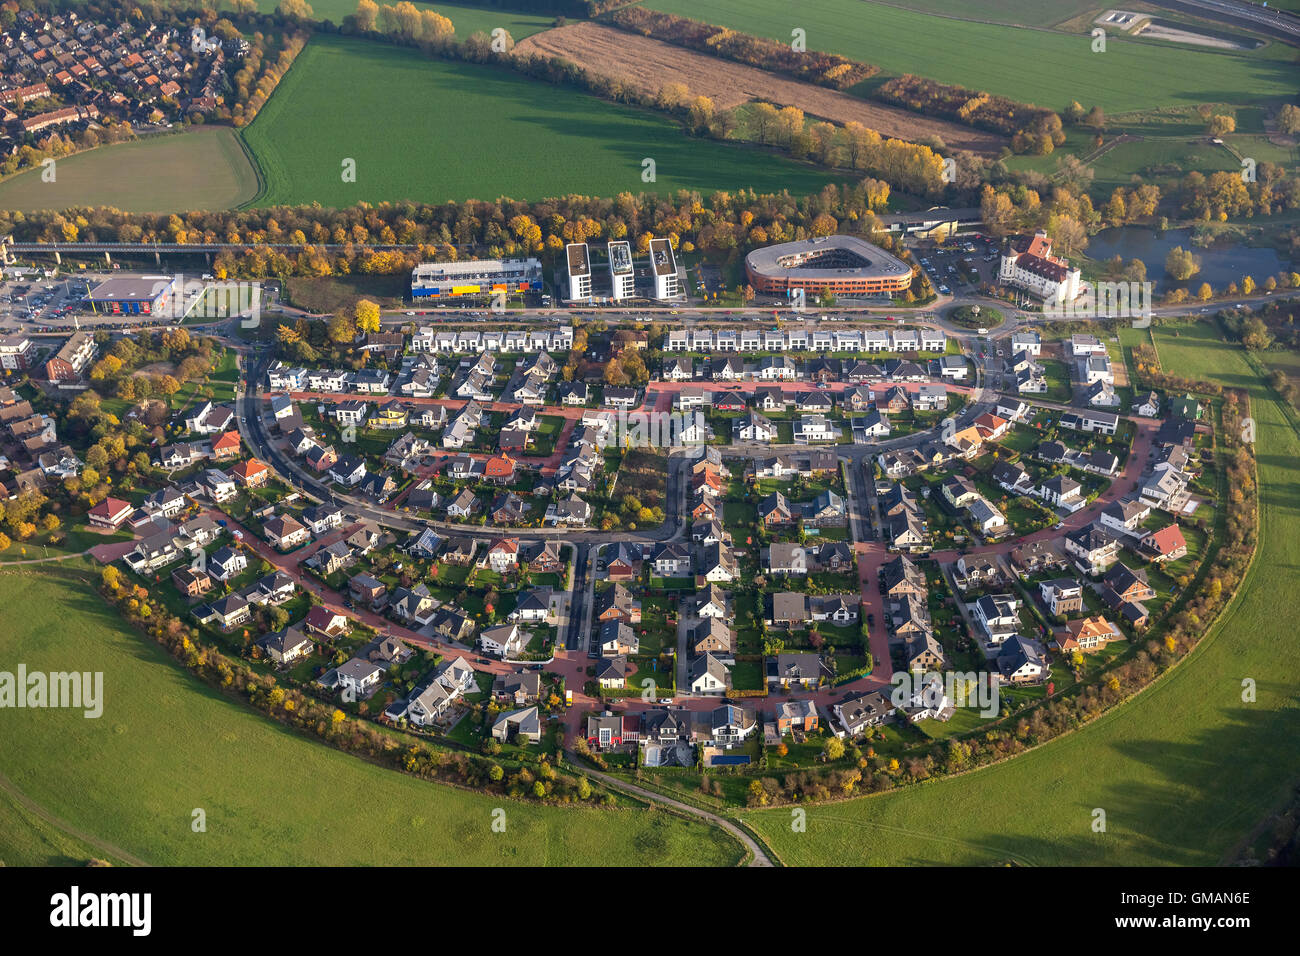 Vue aérienne, Huckingen suis colère Arch, développement immobilier, vue aérienne de la Ruhr, Duisburg Nordrhein-Westfalen, Allemagne, Europe, Banque D'Images